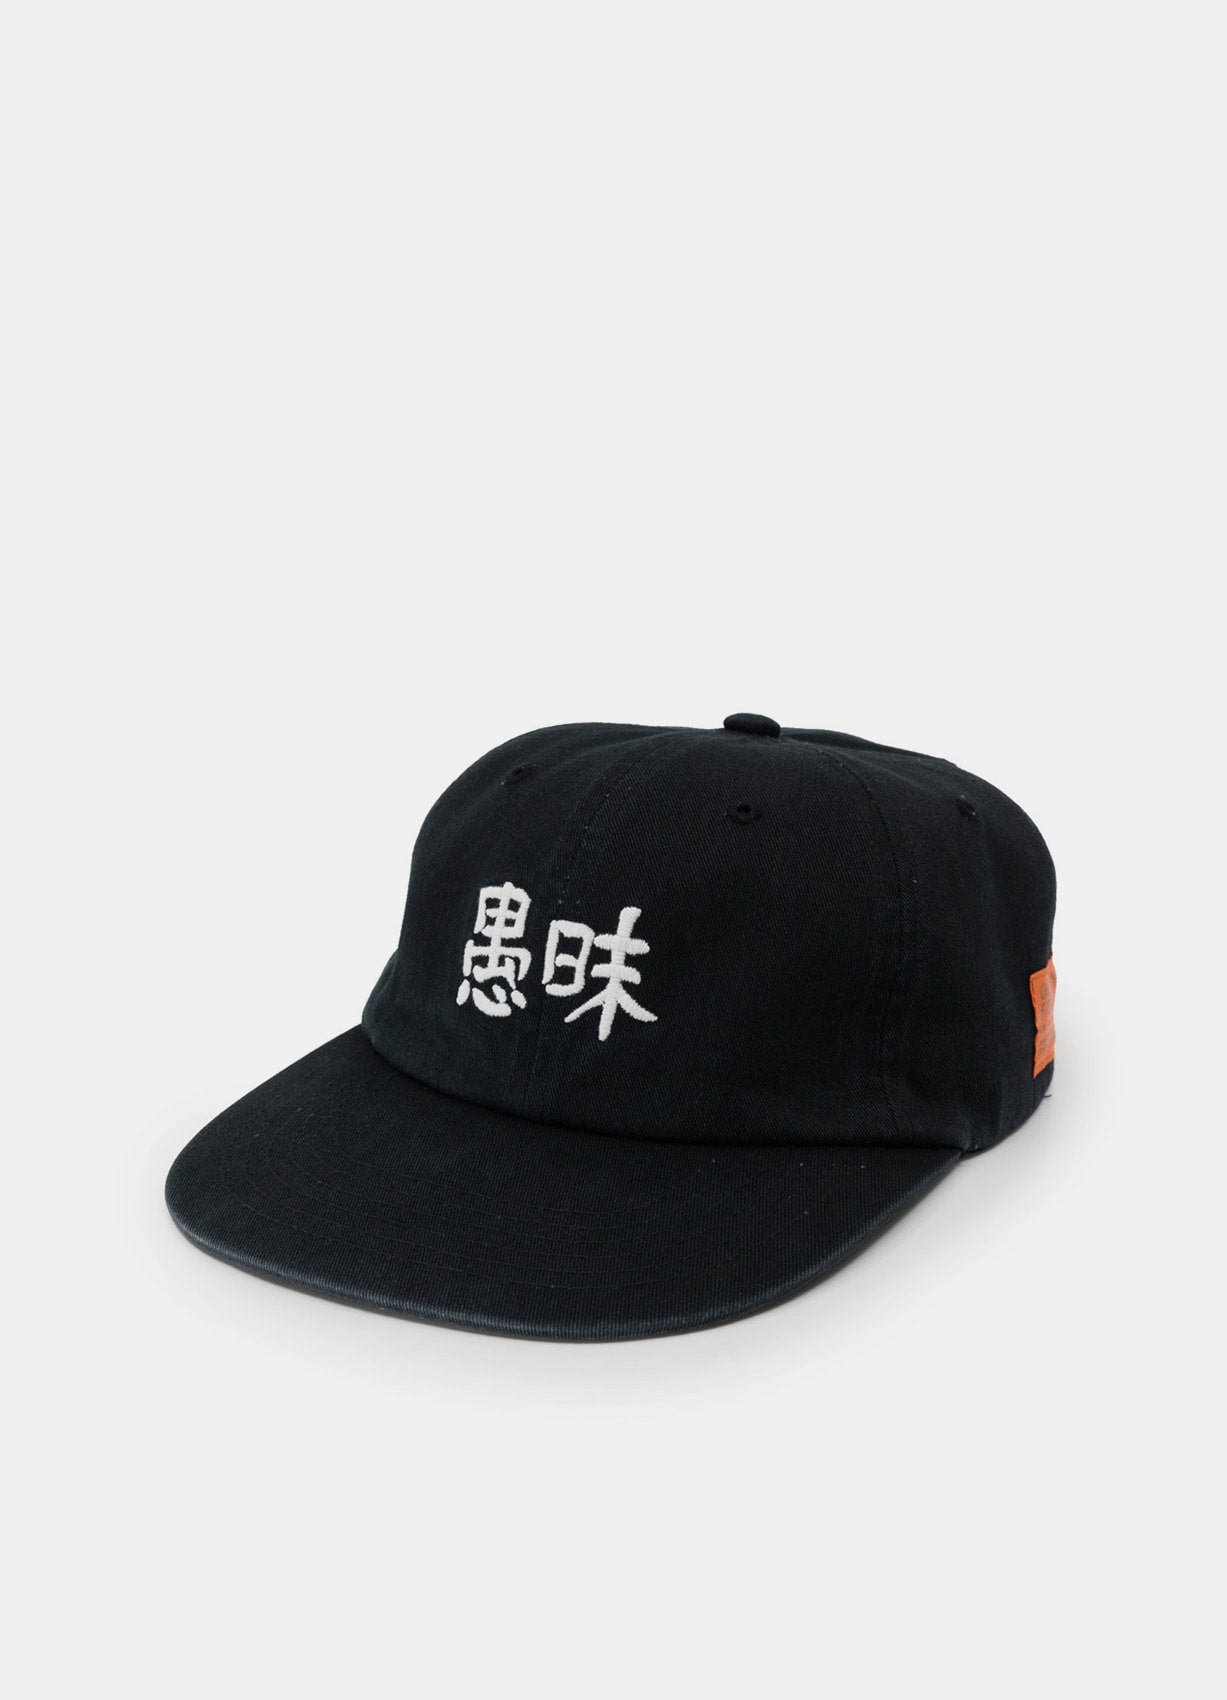 신형수 x 챕터에잇 컬래버레이션 모자 베이스볼캡